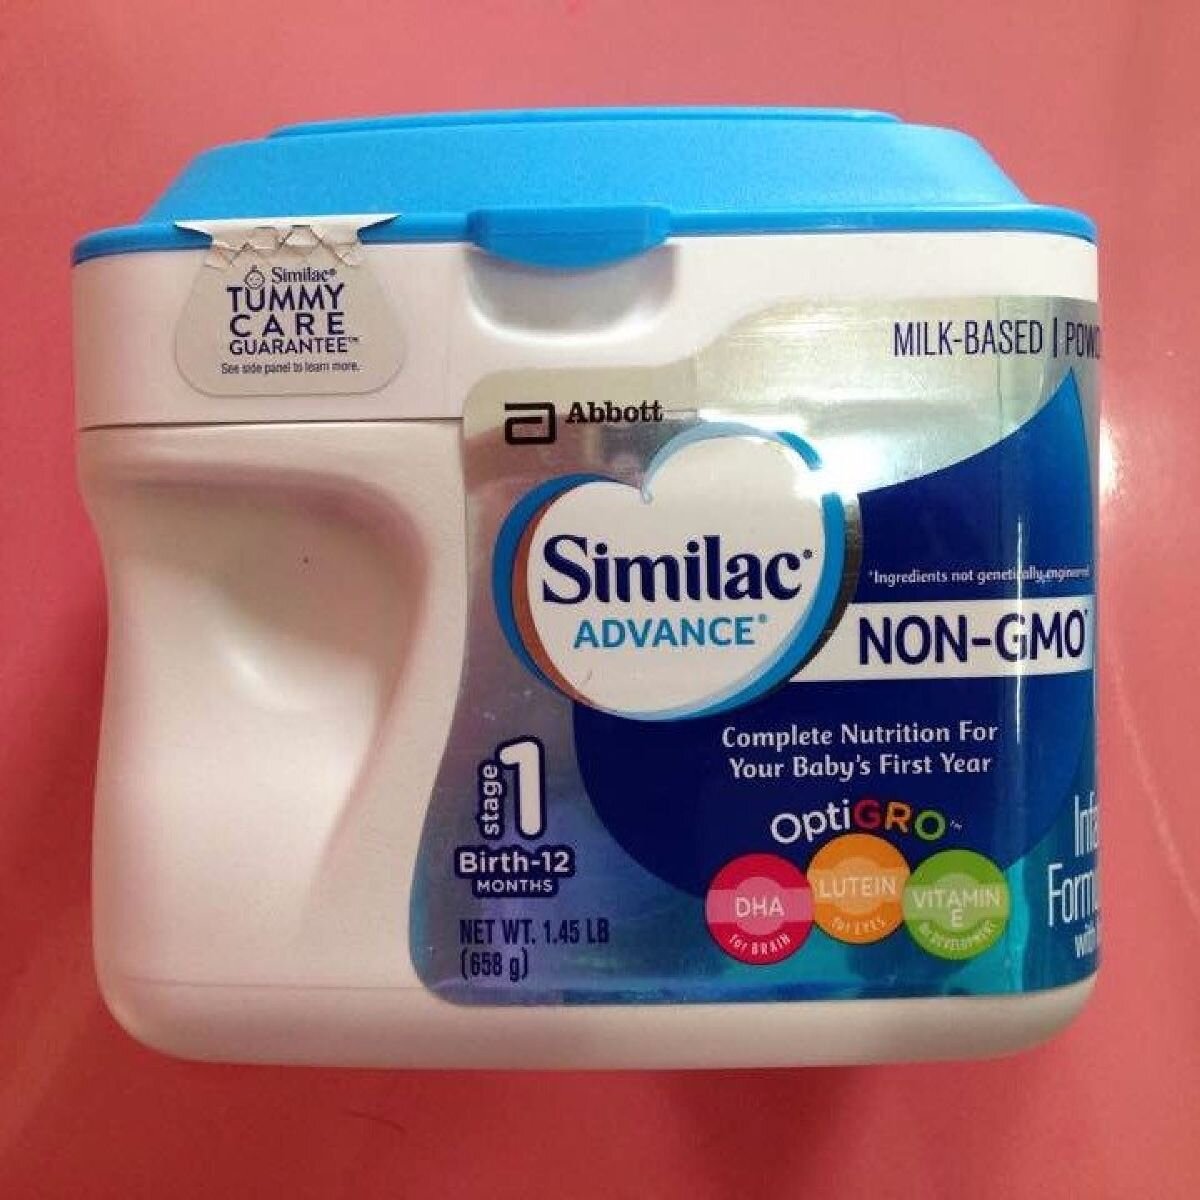 Sữa Similac Advance Non Gmo mang lại nhiều công dụng cho bé yêu